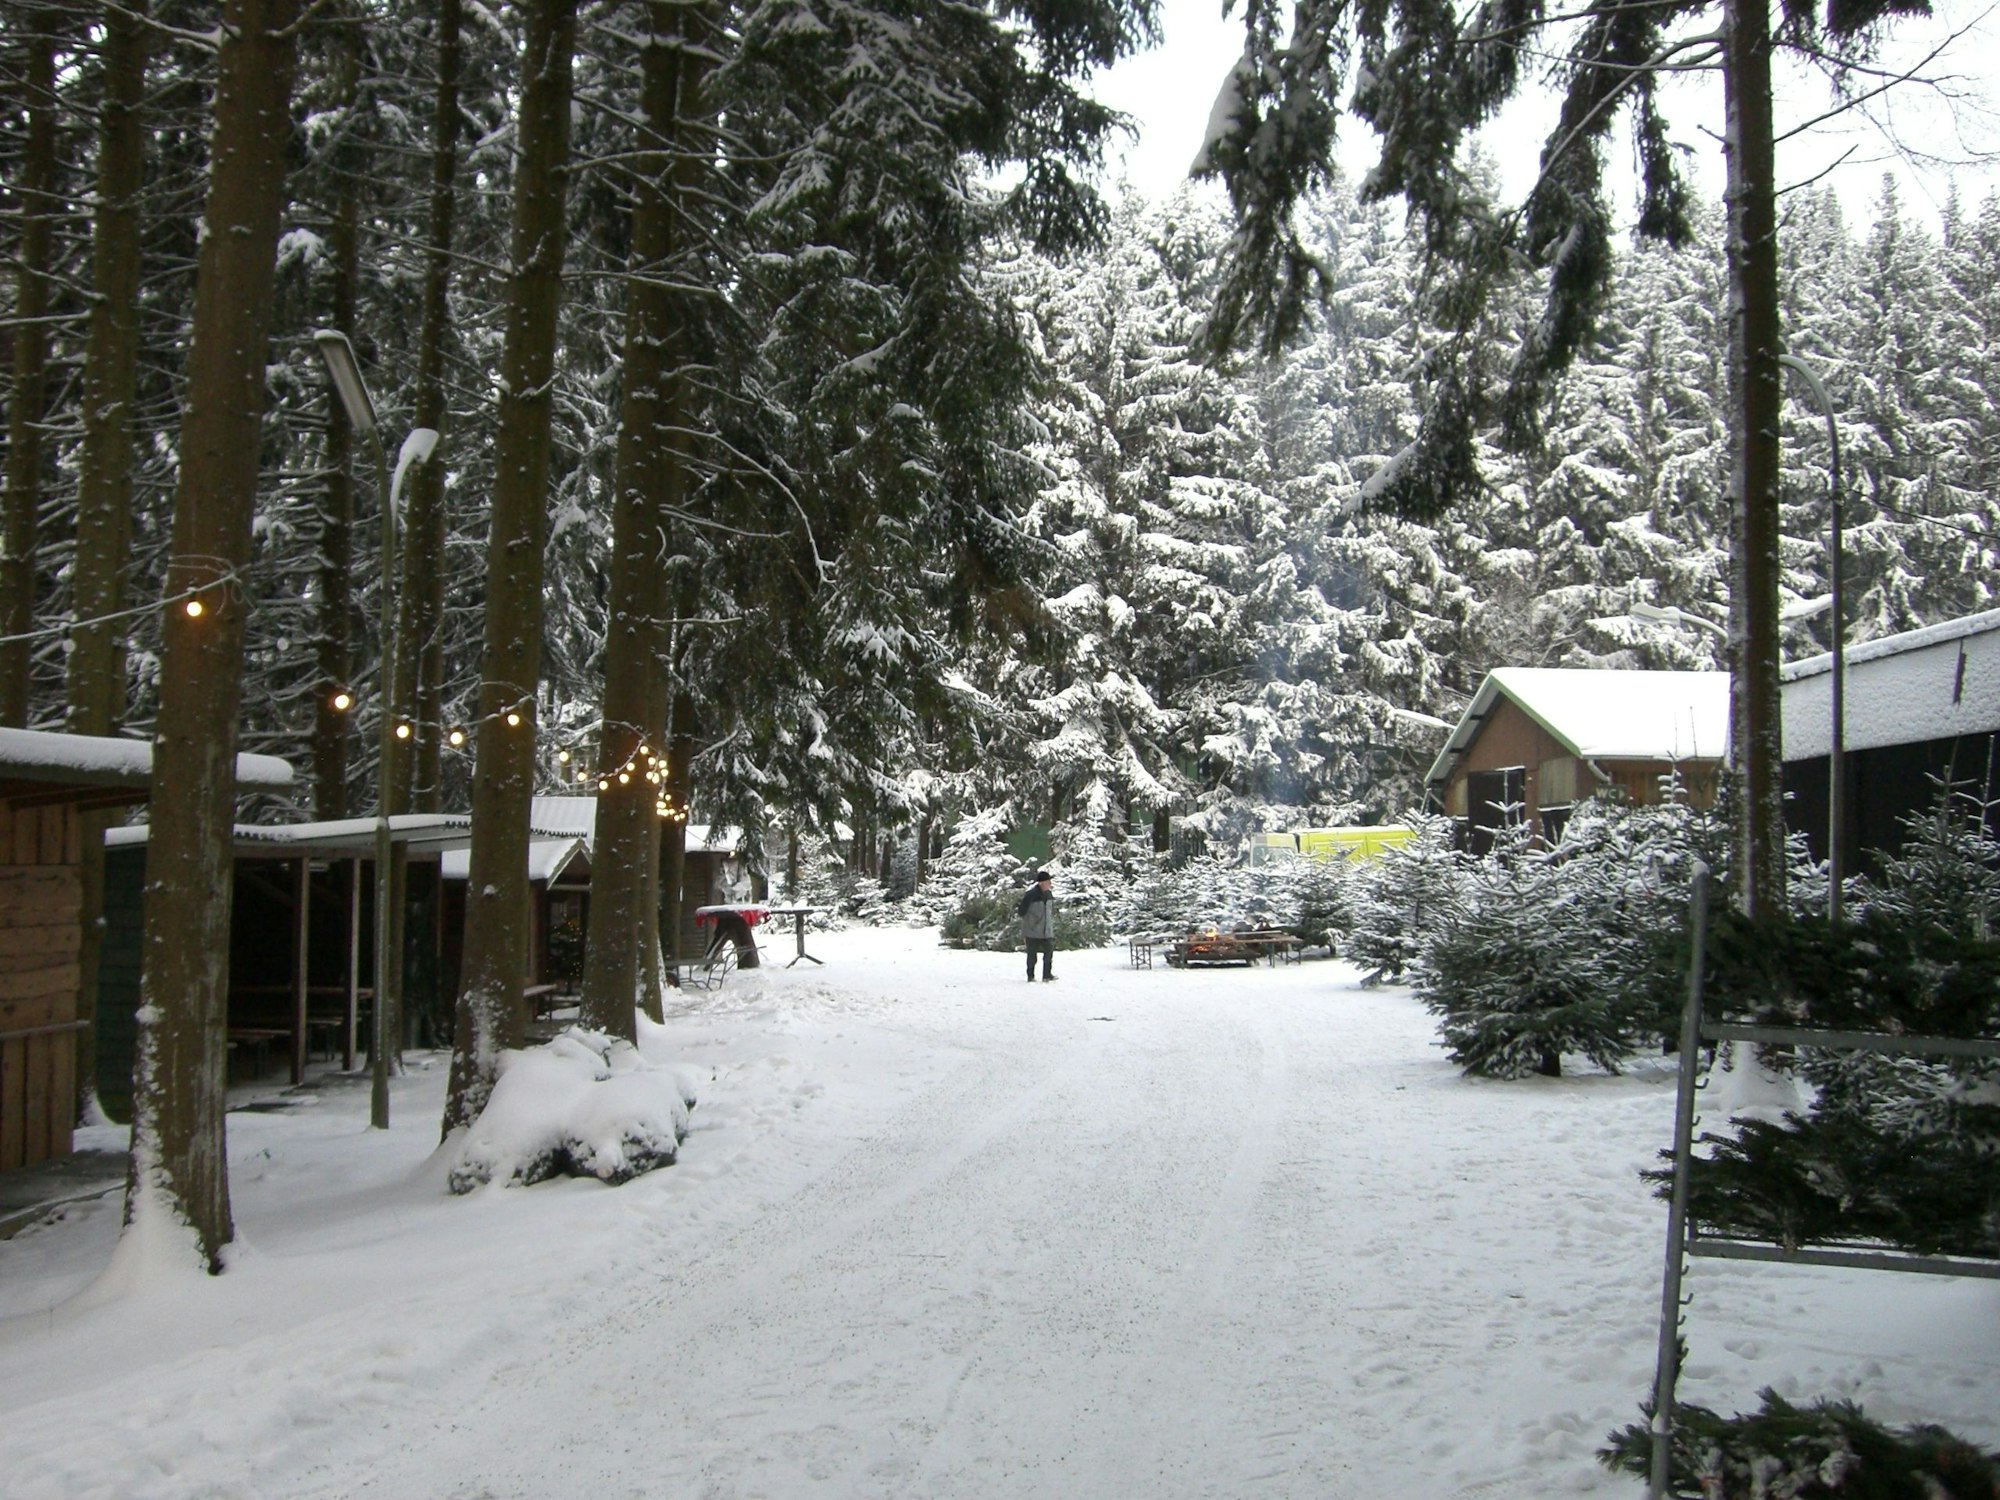 Tannenbäume im Schnee bei Eschbachs, Marialinden Overath